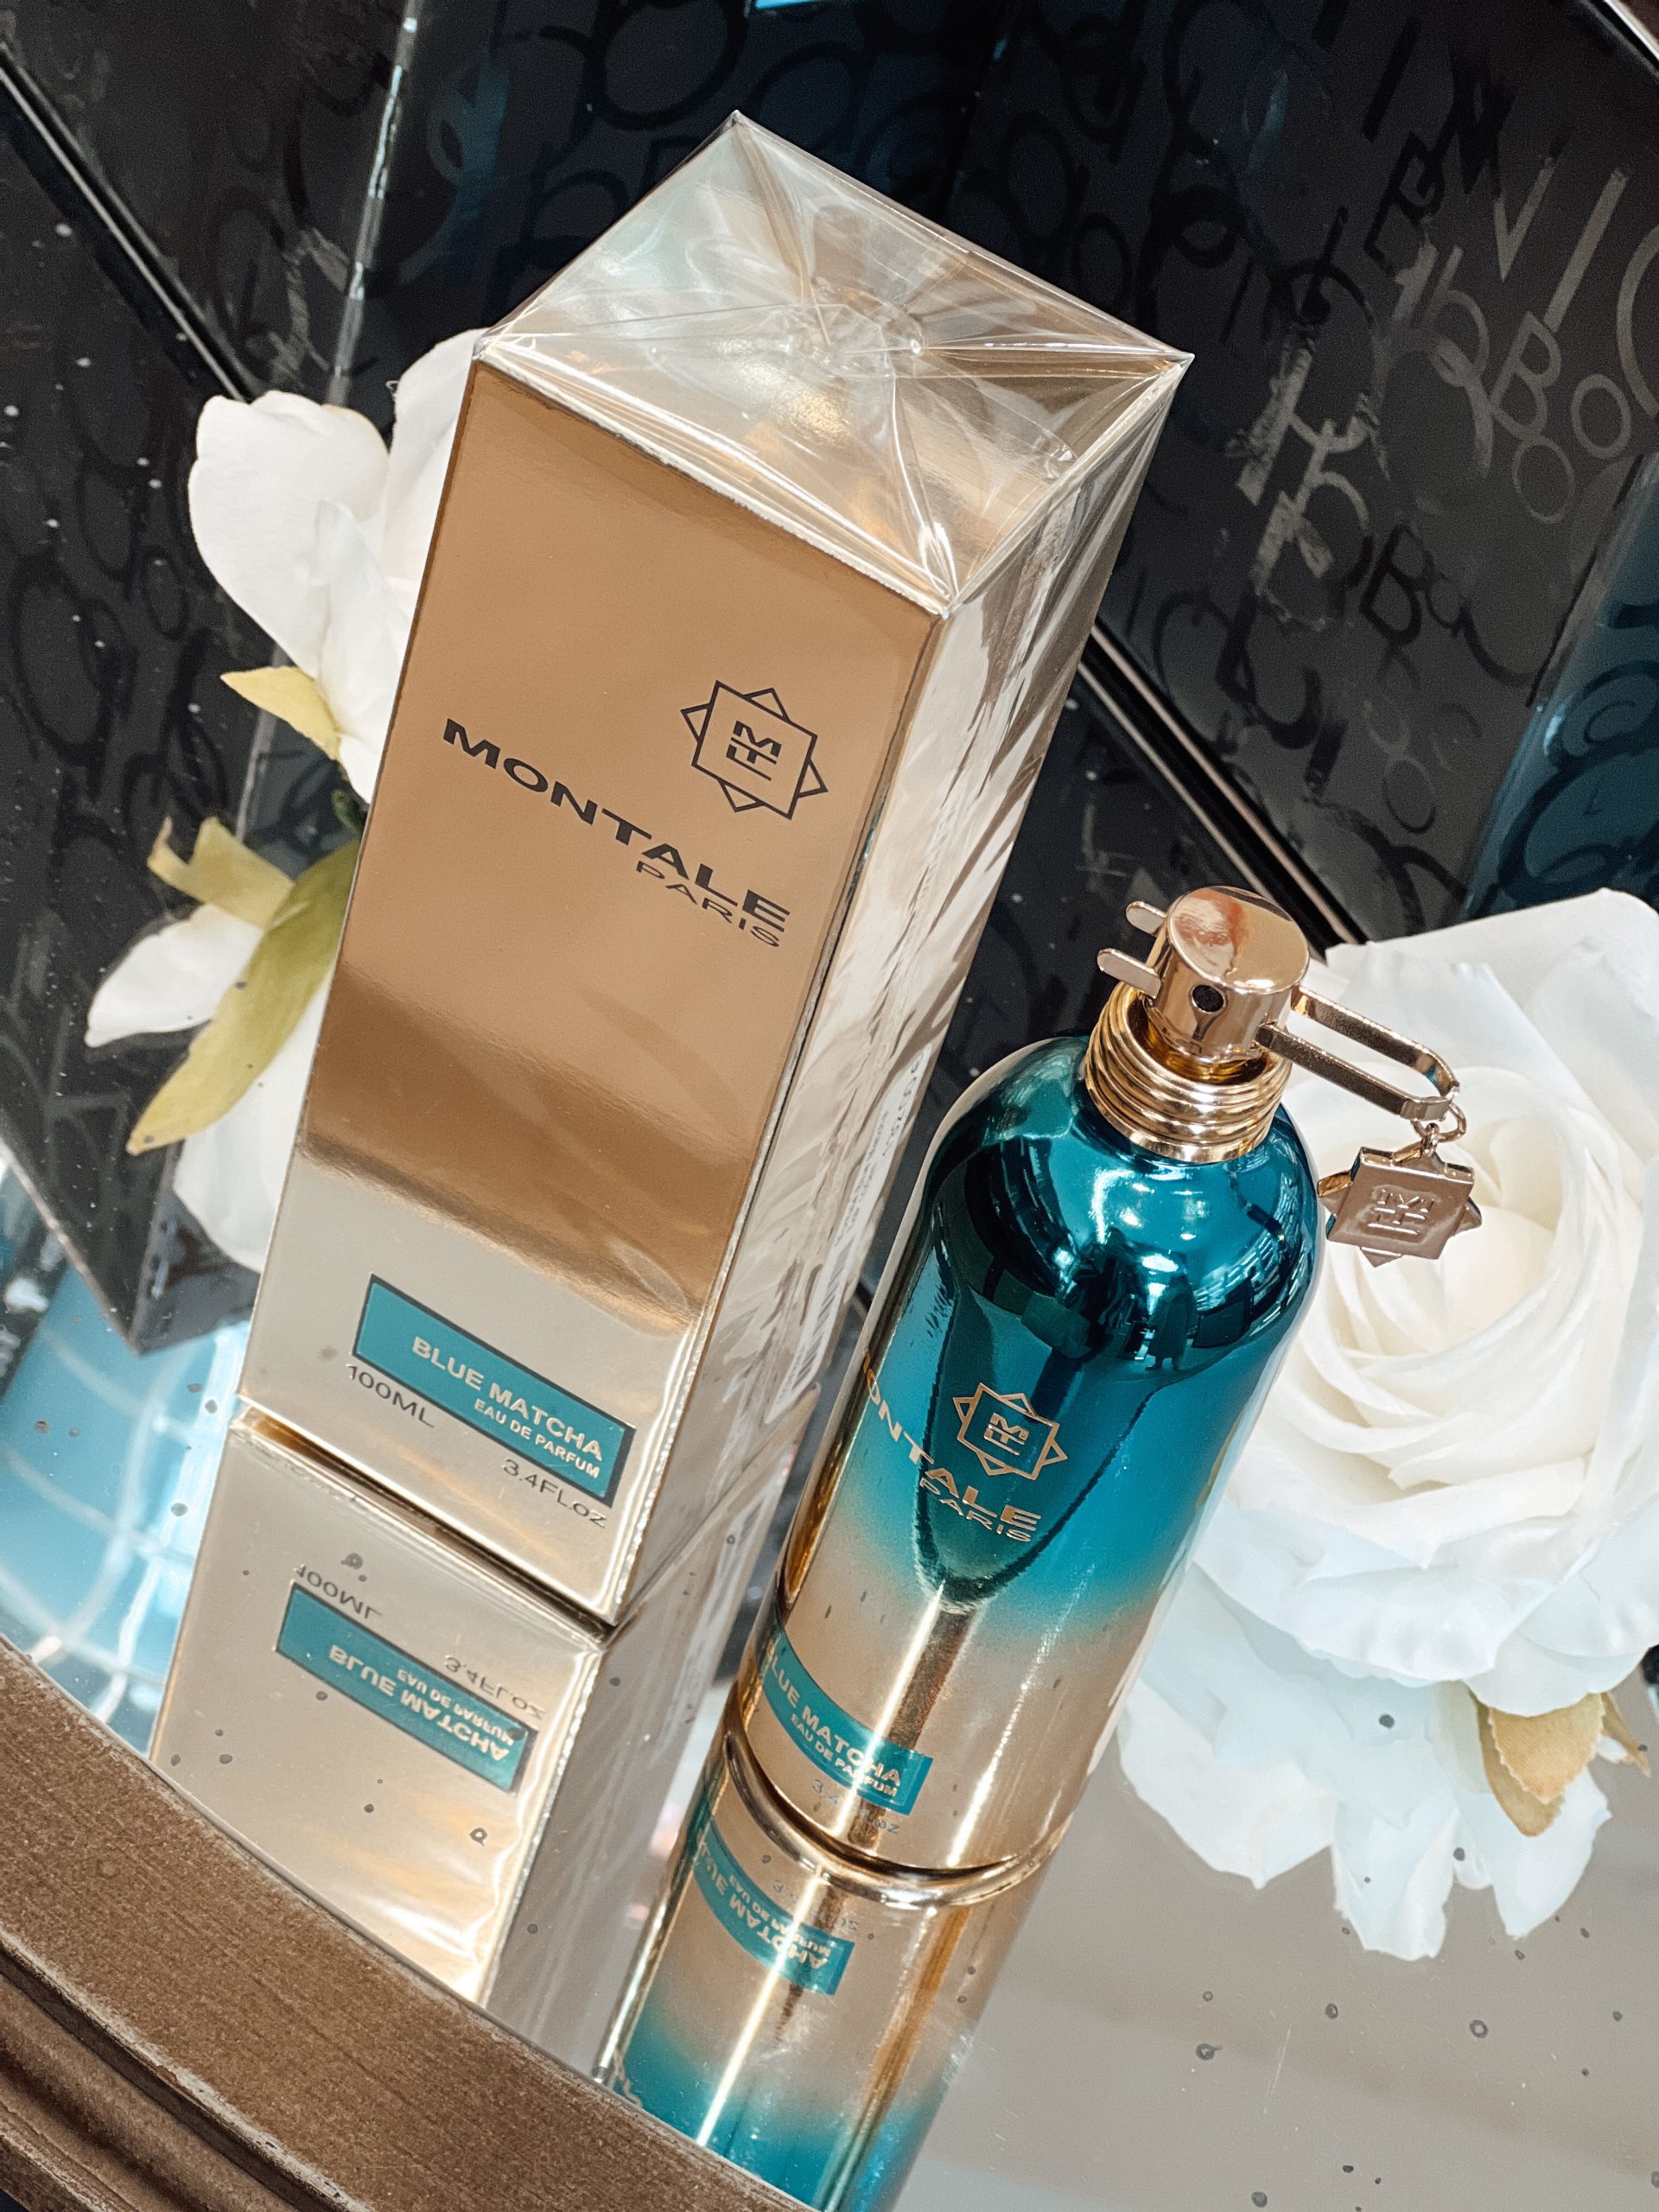 Parfum "Blue Matcha" von "MONTALE PARIS" bei Nägele & Strubell in der Herrengasse